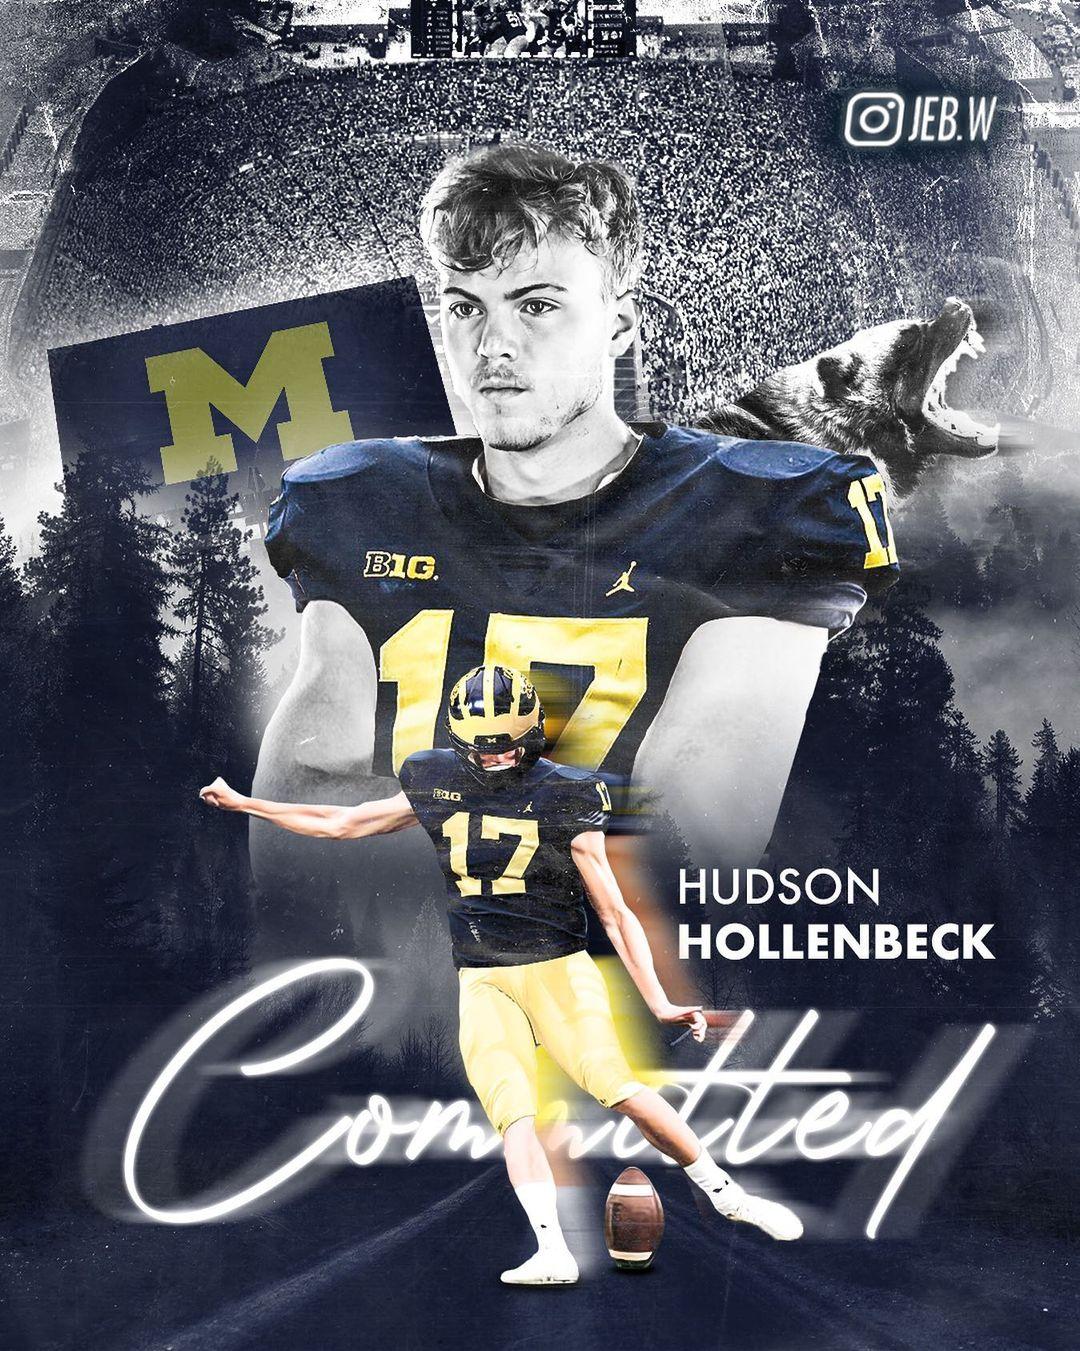 Hudson Hollenbeck Instagram Post Influencer Campaign